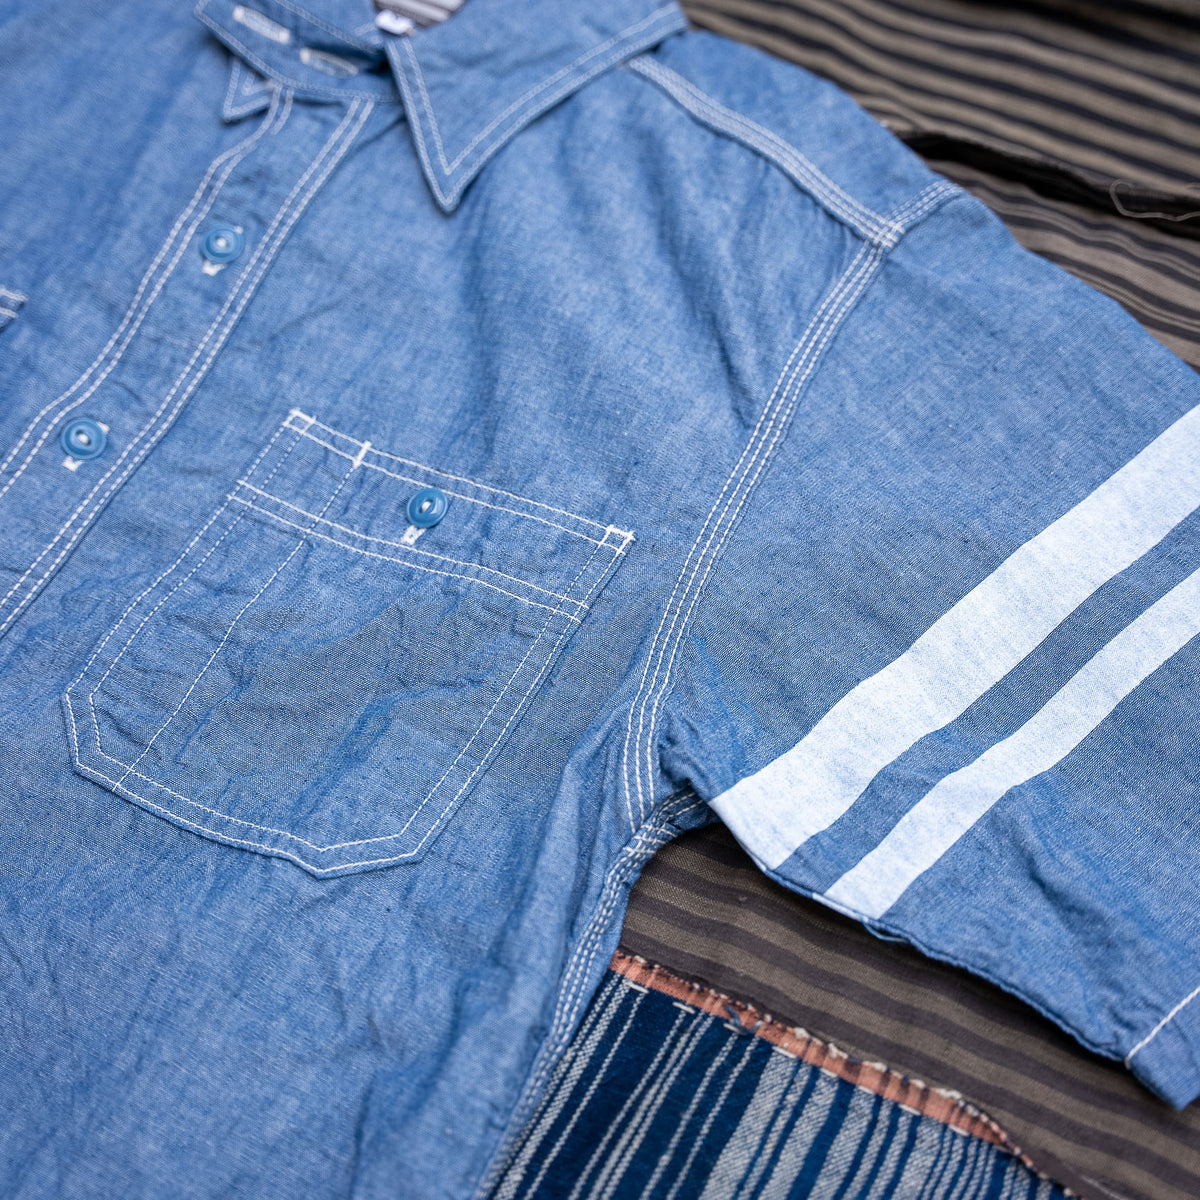 Momotaro Jeans 5oz Selvedge Chambray Summer Shirt – Indigo 